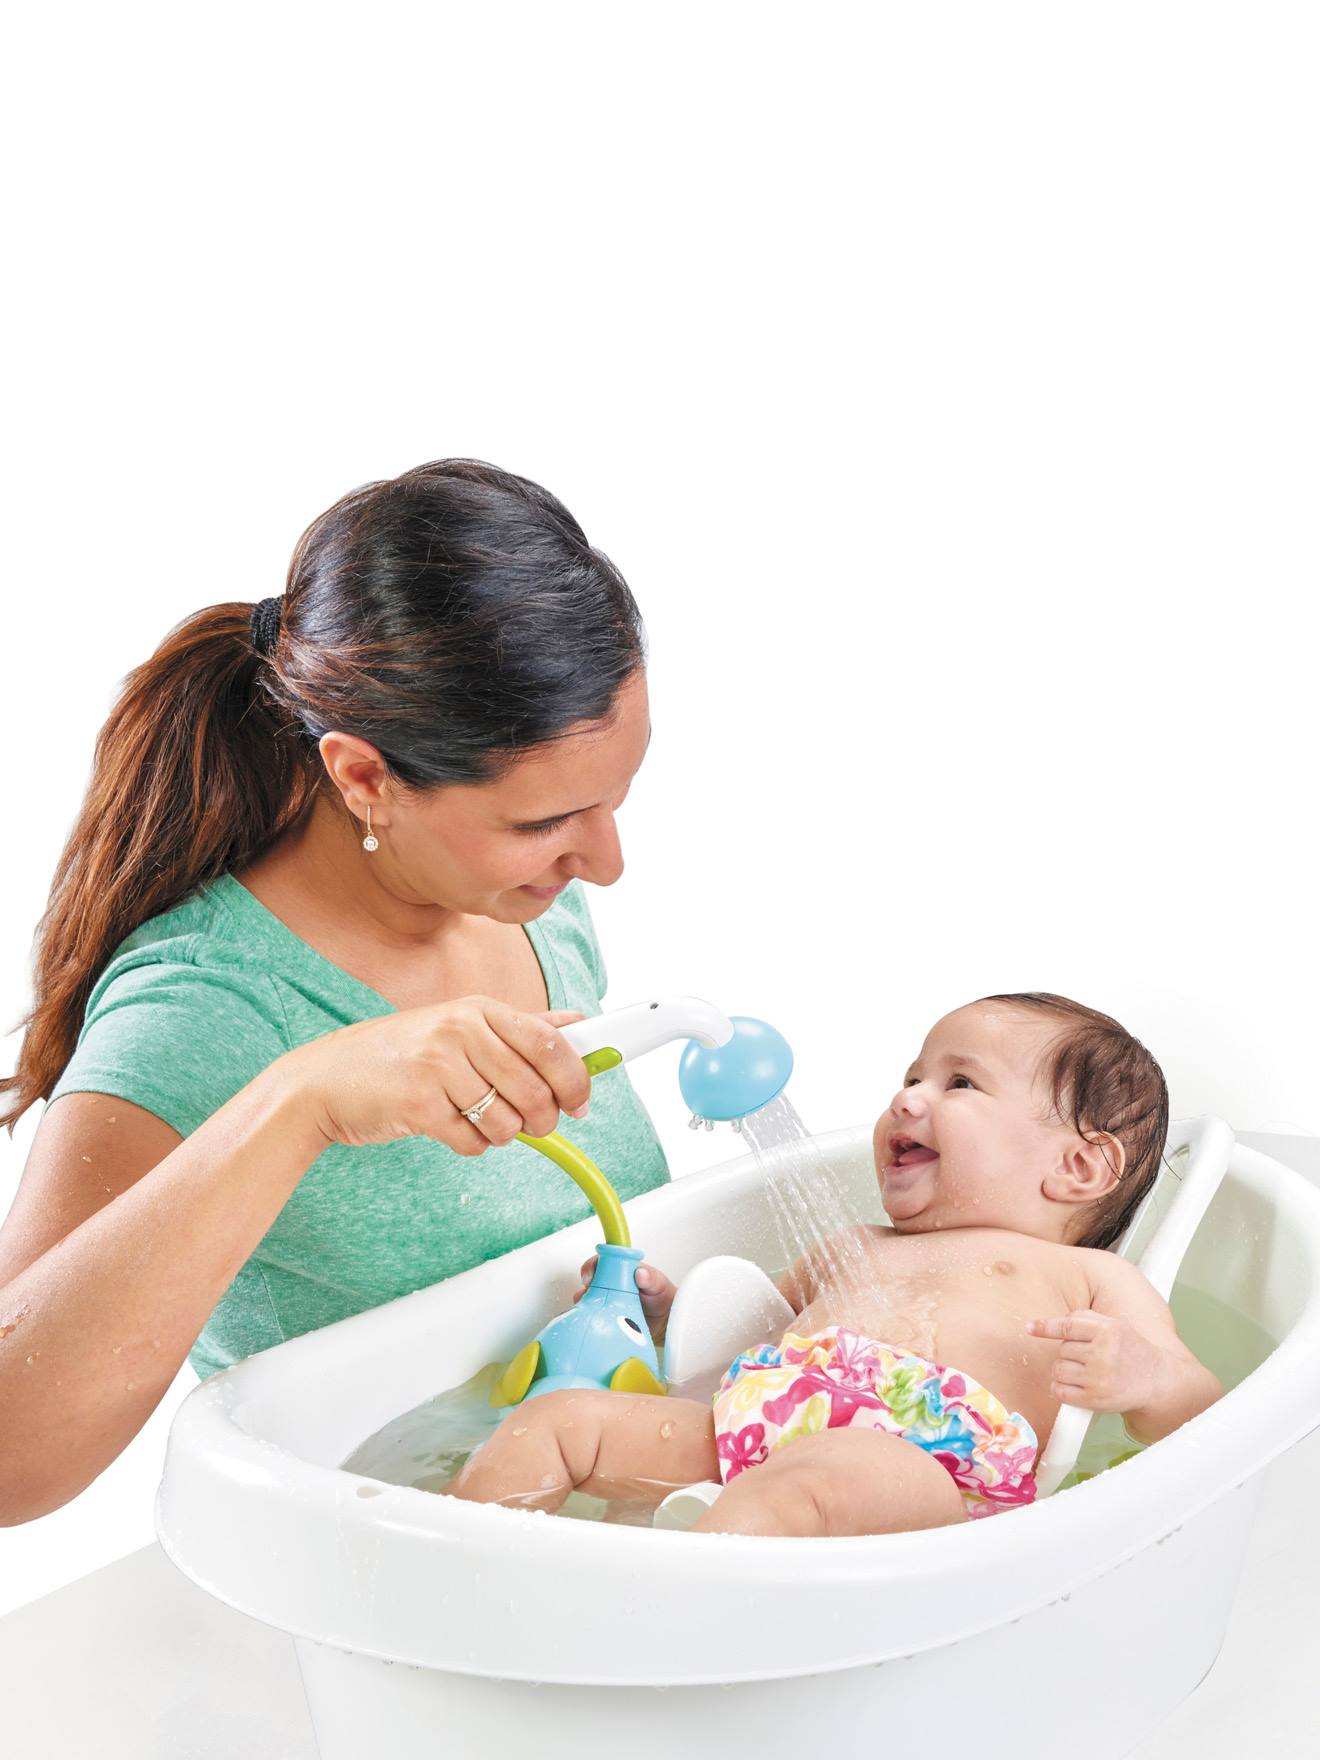 Robinet à jet d'eau éléphant pour le bain, jouet de bain pour bébé, tuyau  et jeu idéal pour baigner l'enfant dans la salle de bain